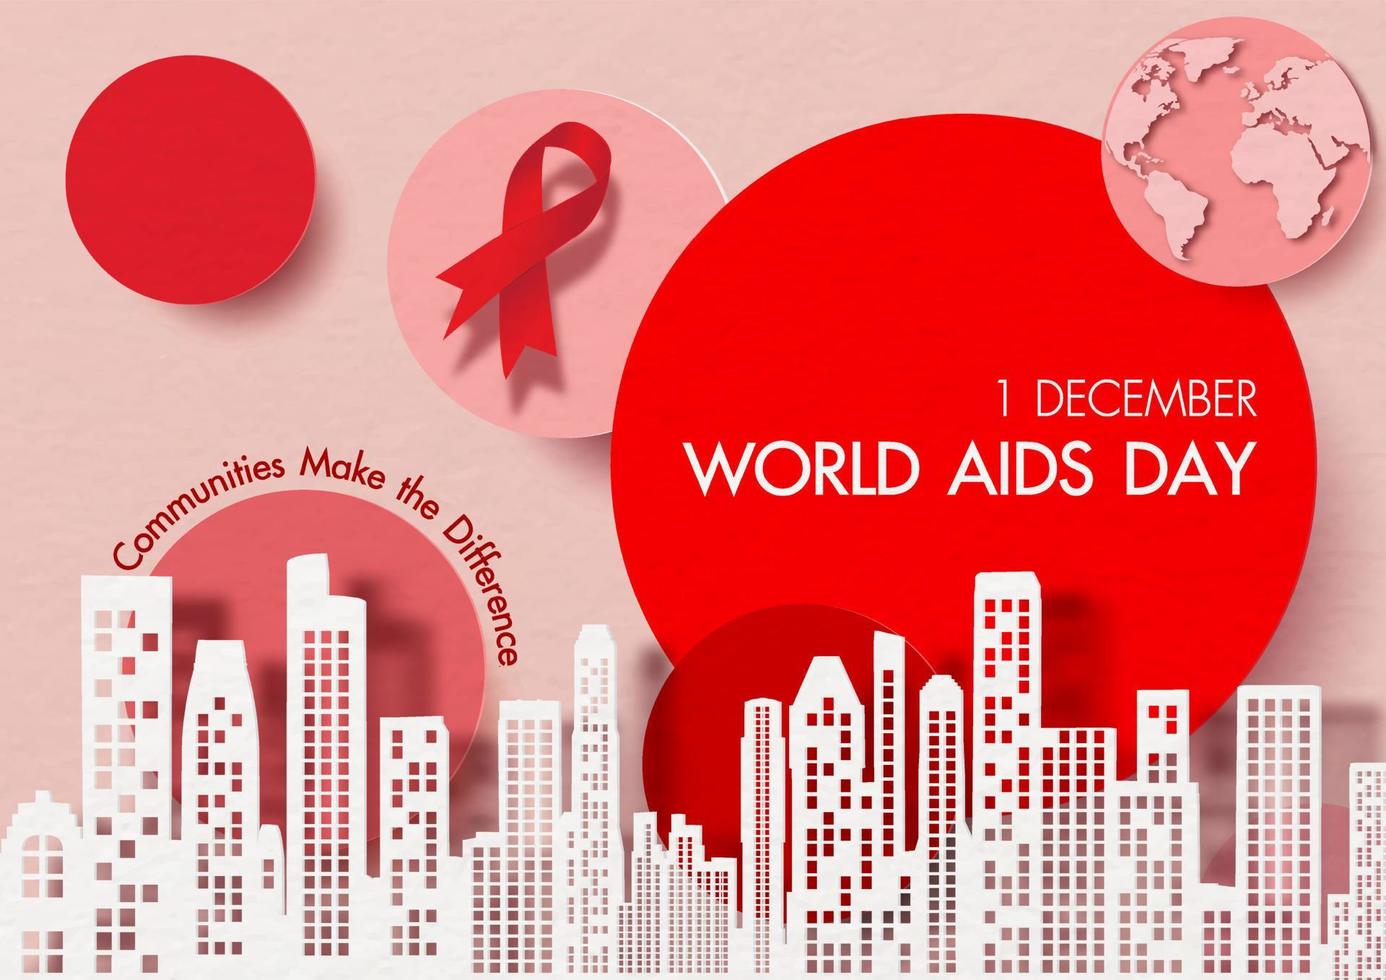 landskap stad på de namn av händelse på röd cirklar med röd band, slogan, kloten och rosa bakgrund. kampanj affisch av värld AIDS dag i papper skära stil och vektor design.